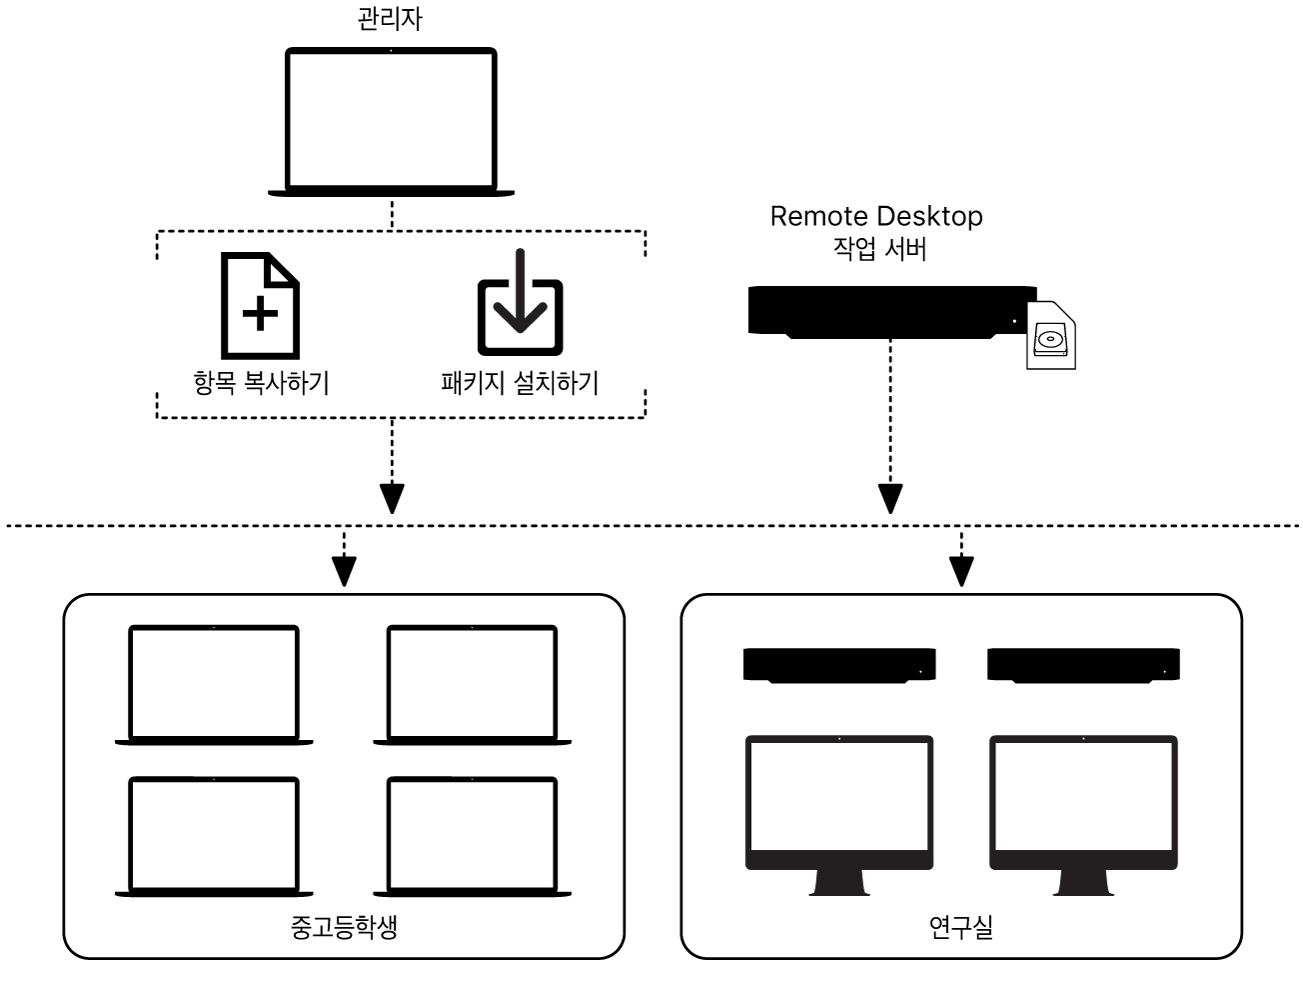 Remote Desktop을 사용하여 원격 컴퓨터에 파일을 복사하거나 패키지를 설치할 수 있음.